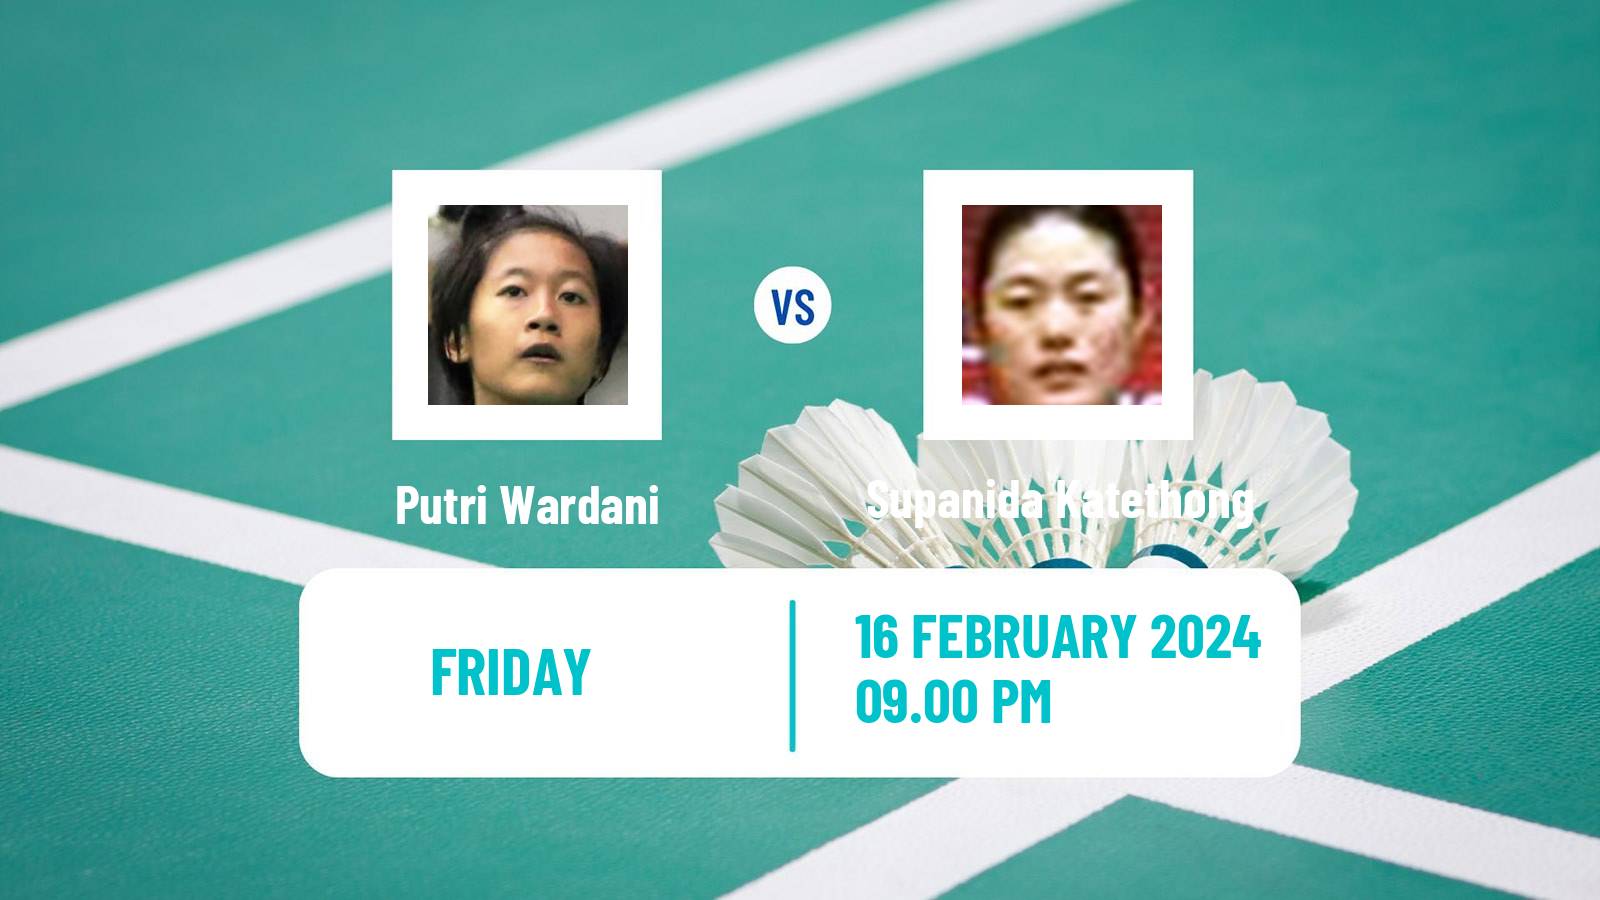 Badminton BWF Asia Championships Teams Women Putri Wardani - Supanida Katethong